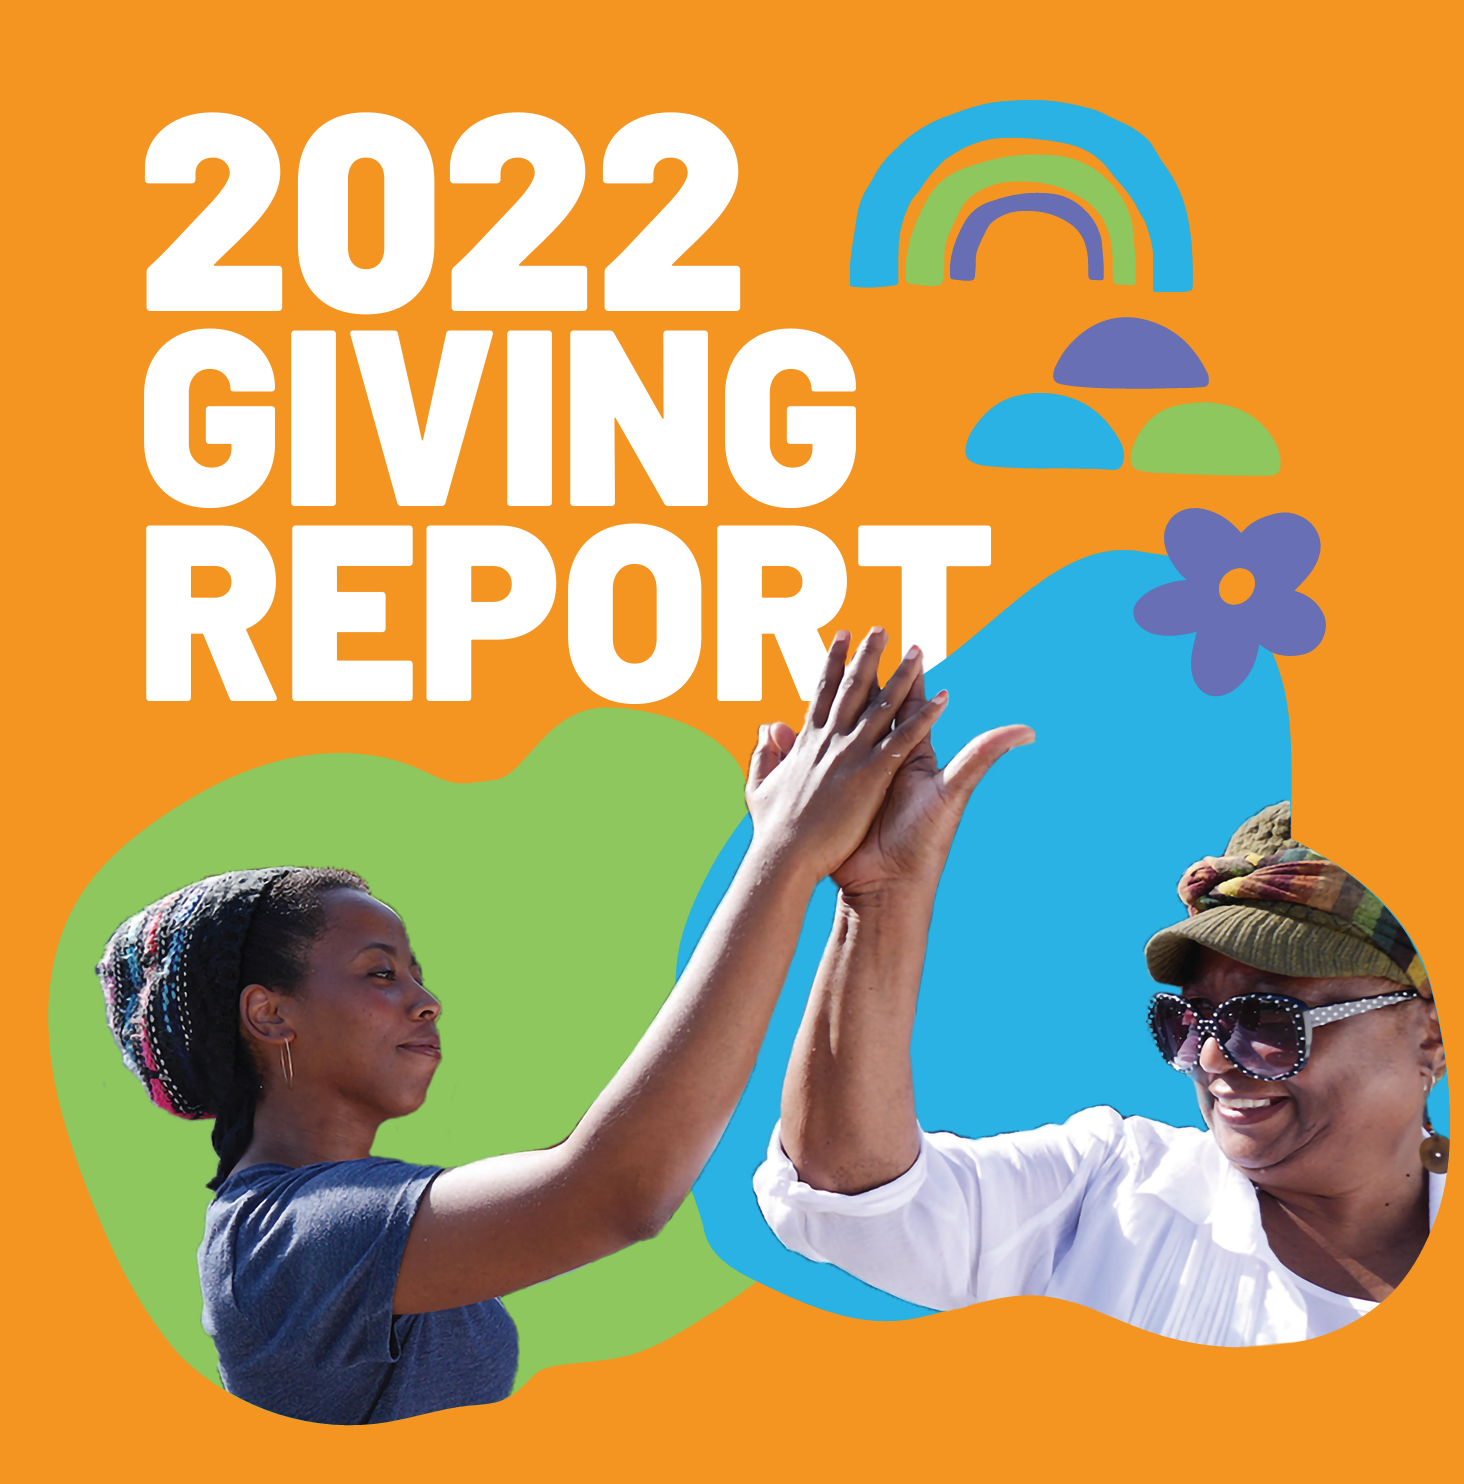 गिविंग रिपोर्ट 2022: सकारात्मक परिवर्तन के माध्यम से अपना प्रभाव बढ़ा रहा है